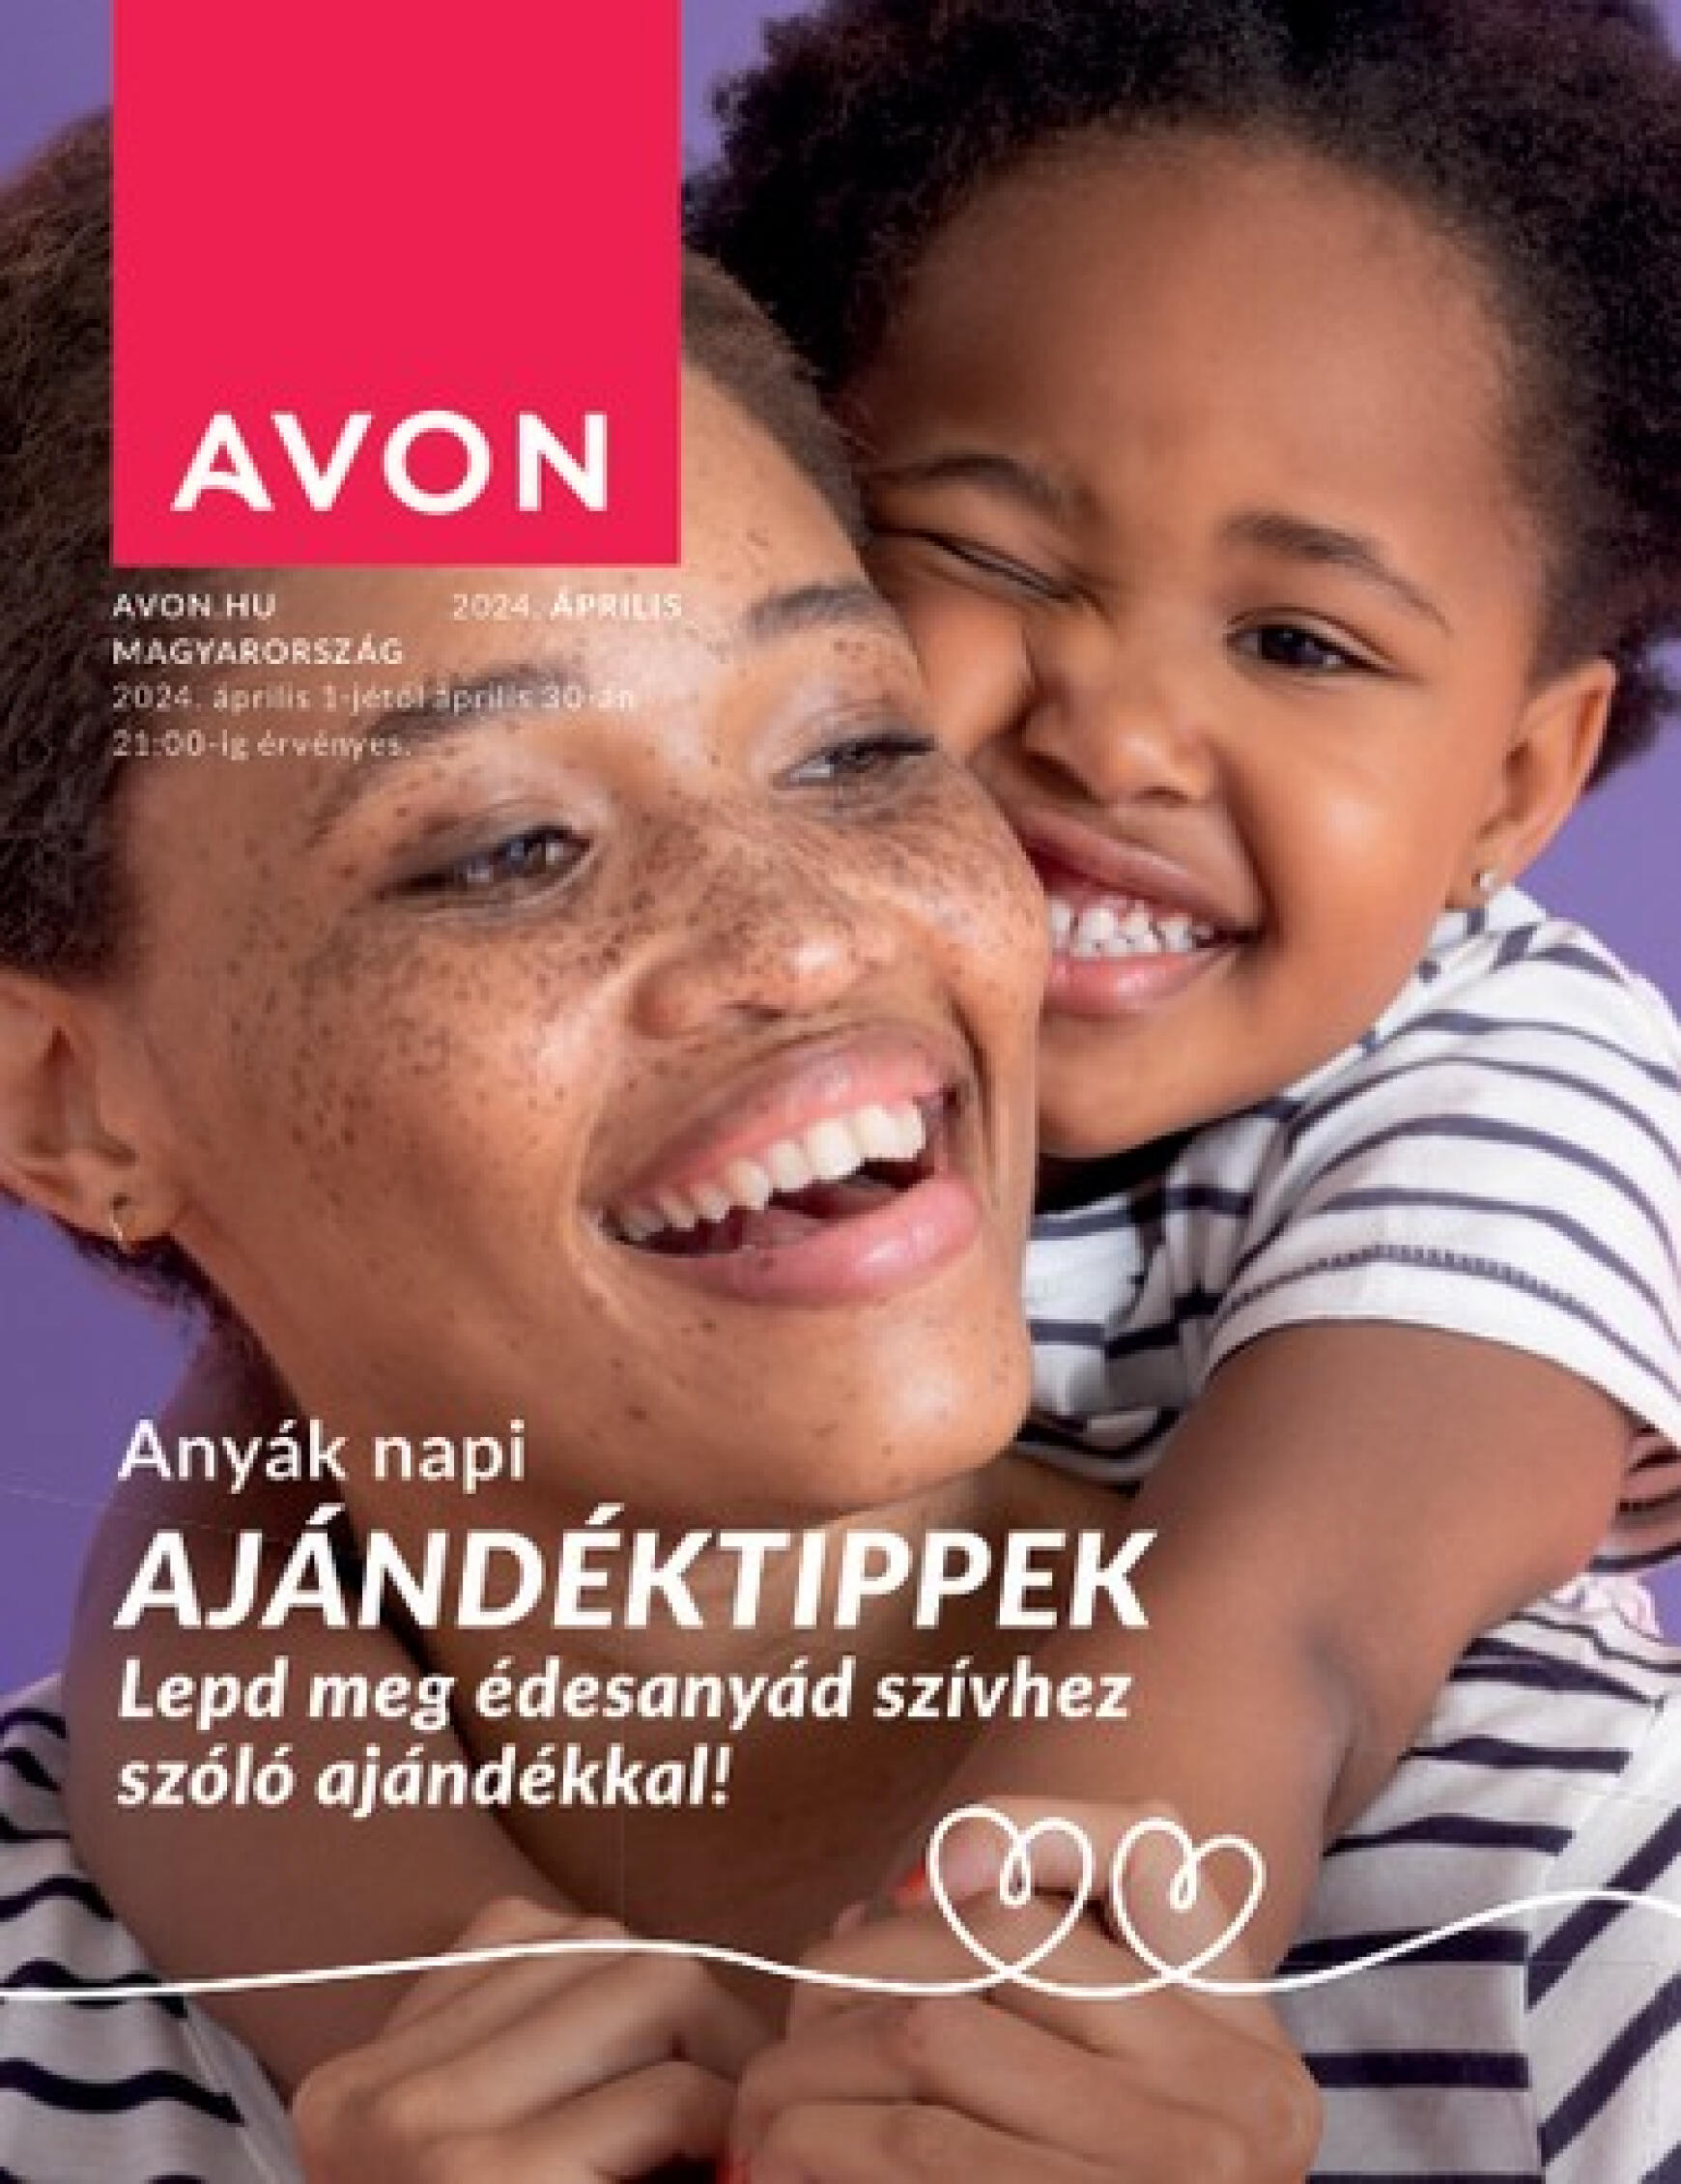 avon - Aktuális újság Avon - Anyák napi katalógus 04.01. - 04.30. - page: 1